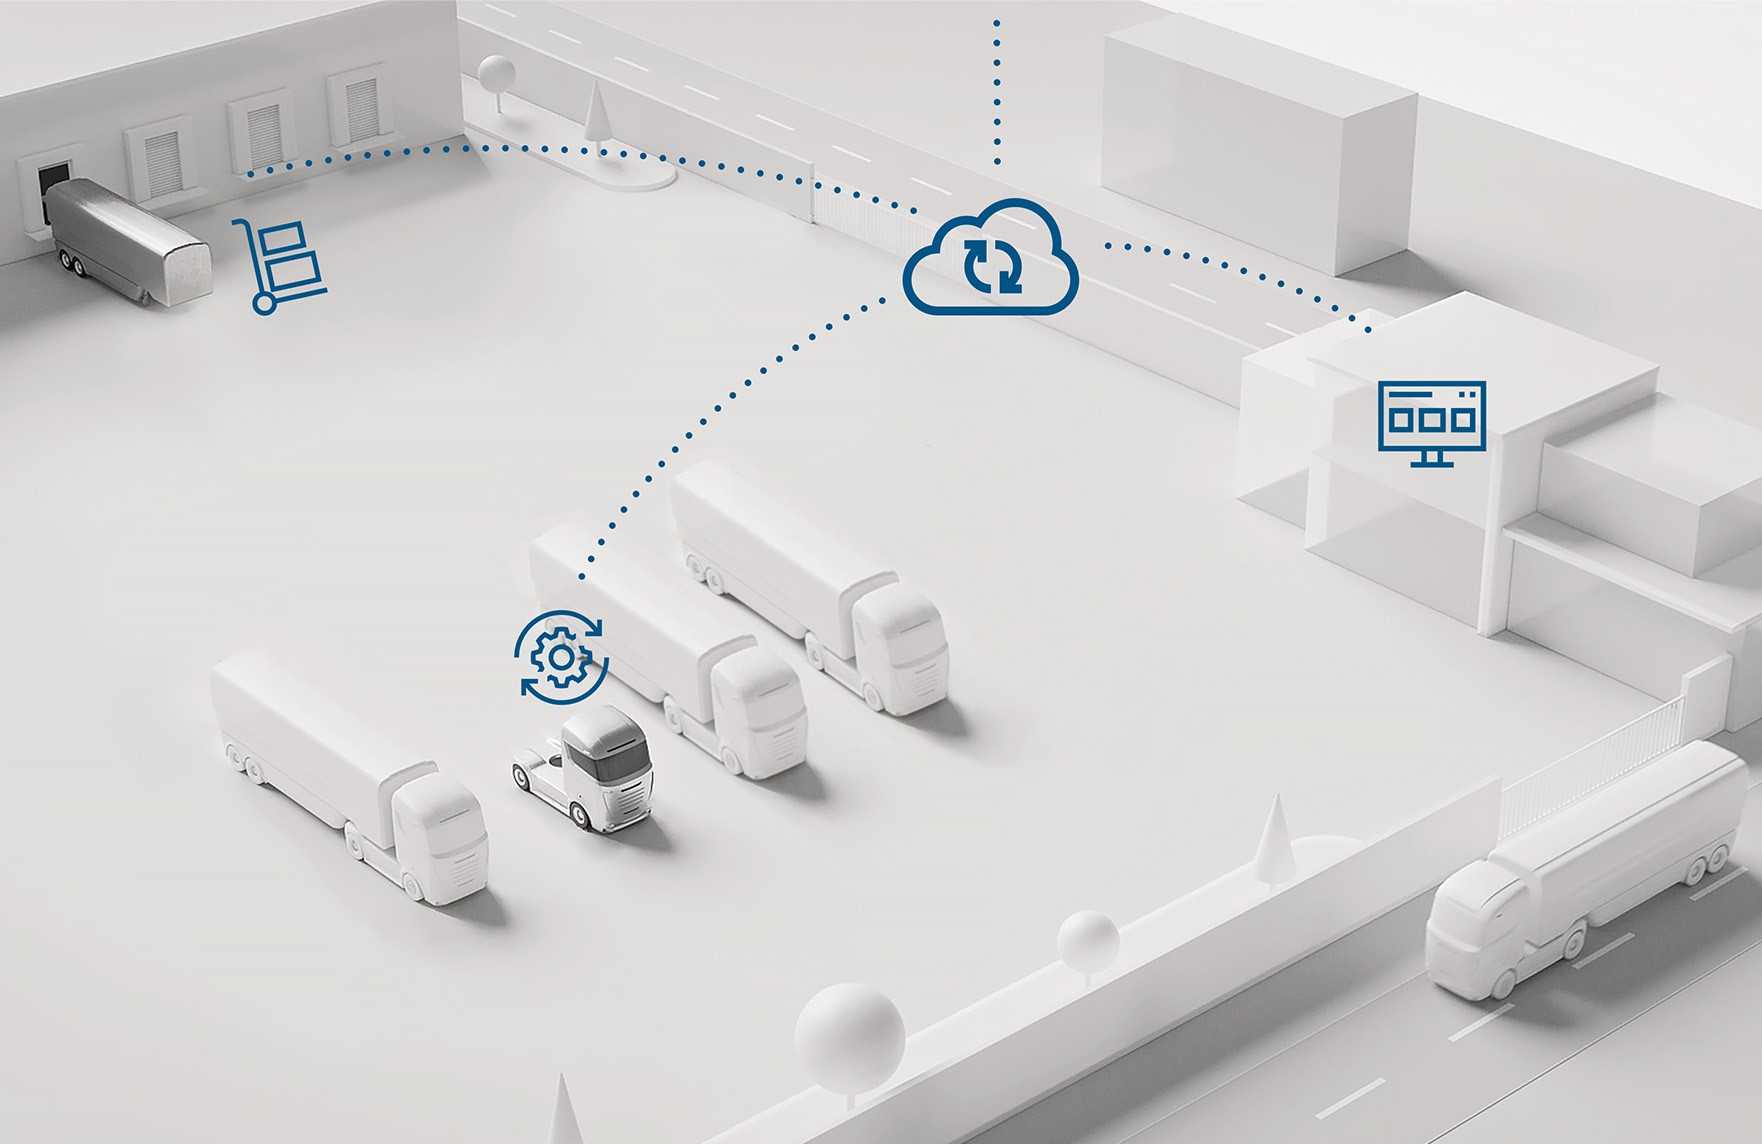 Plataforma de serviços para logística reúne expertise em mobilidade, software e nuvem